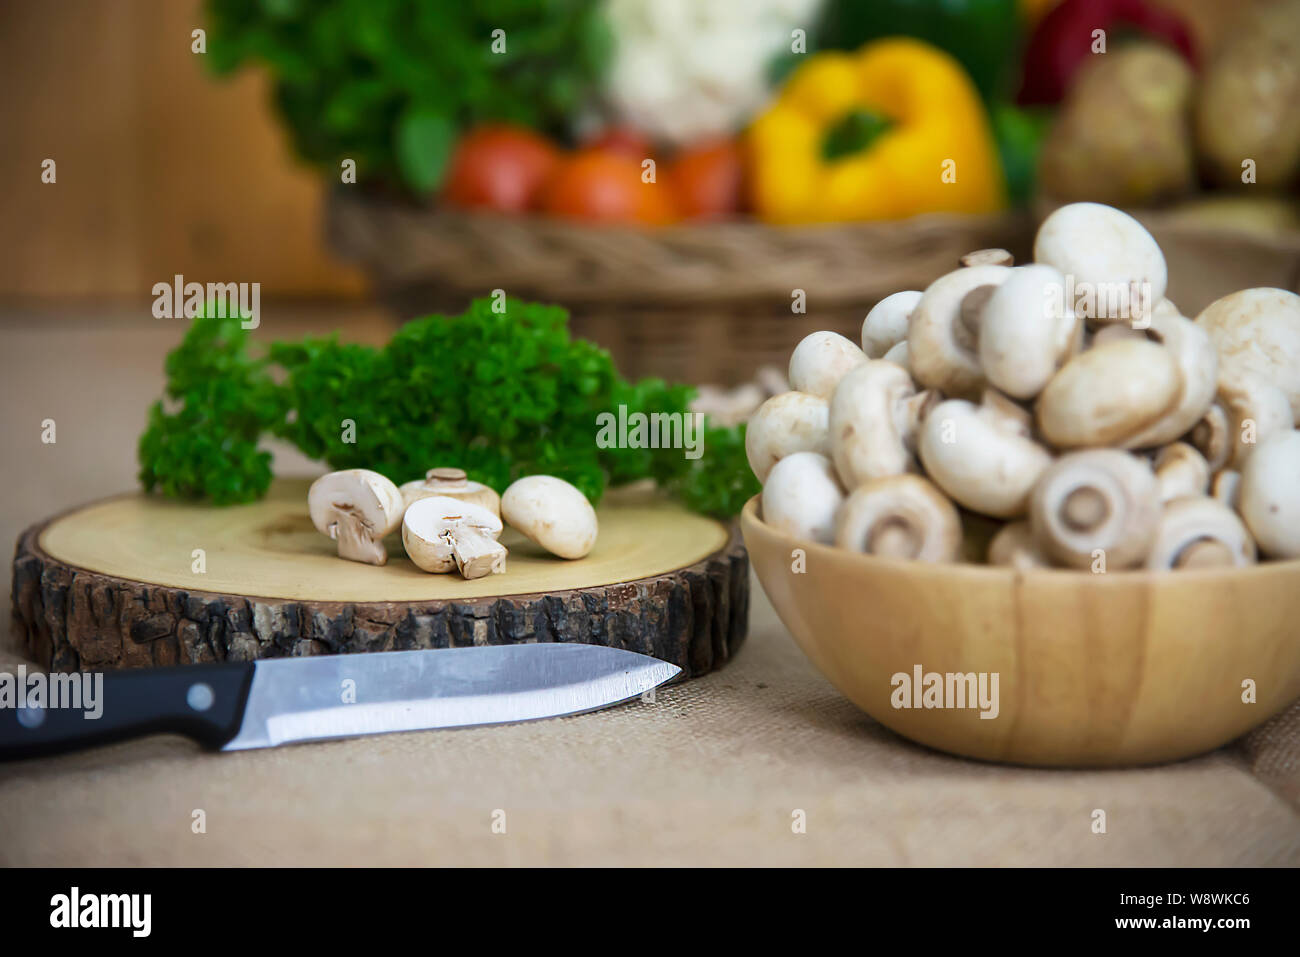 Légumes frais champignon dans la cuisine - concept de cuisine légumes champignons frais Banque D'Images